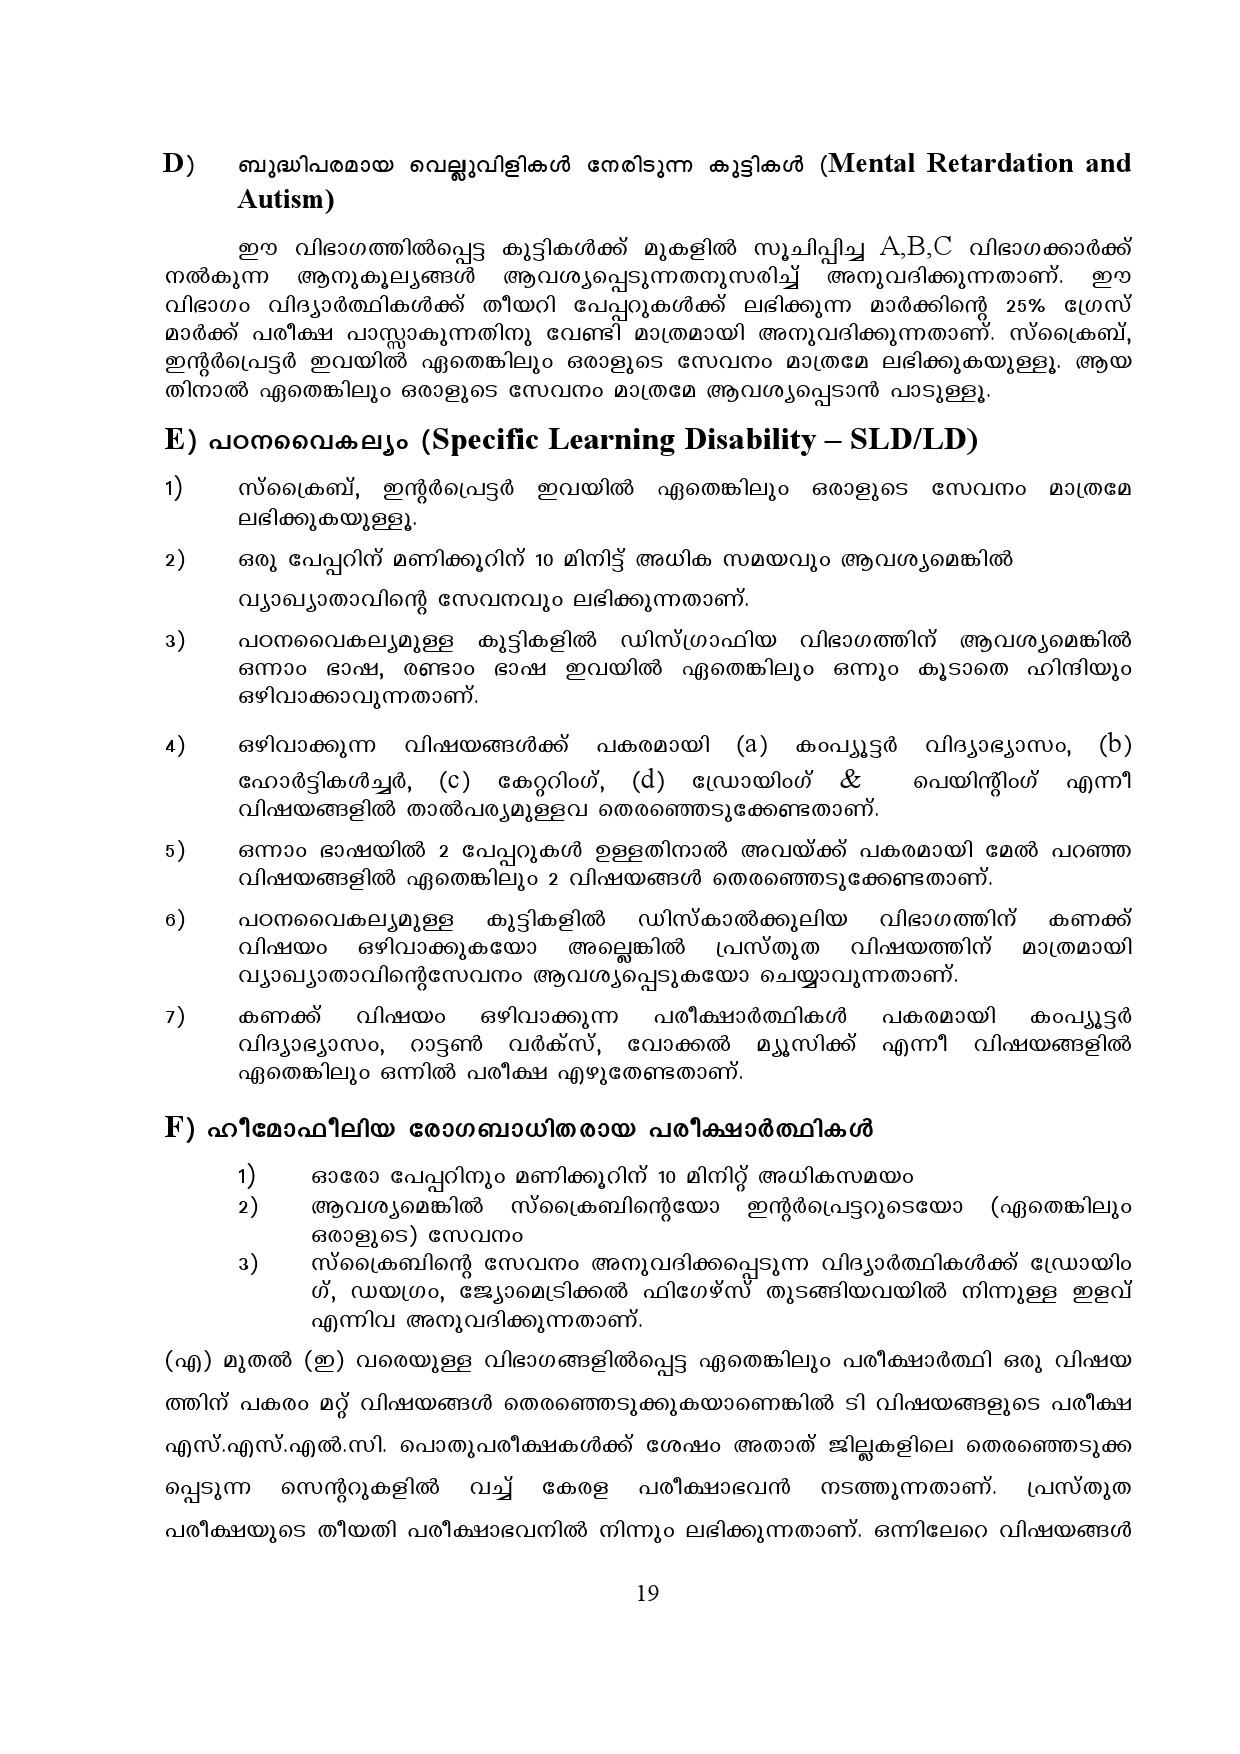 Kerala SSLC Exam Result 2019 - Notification Image 19